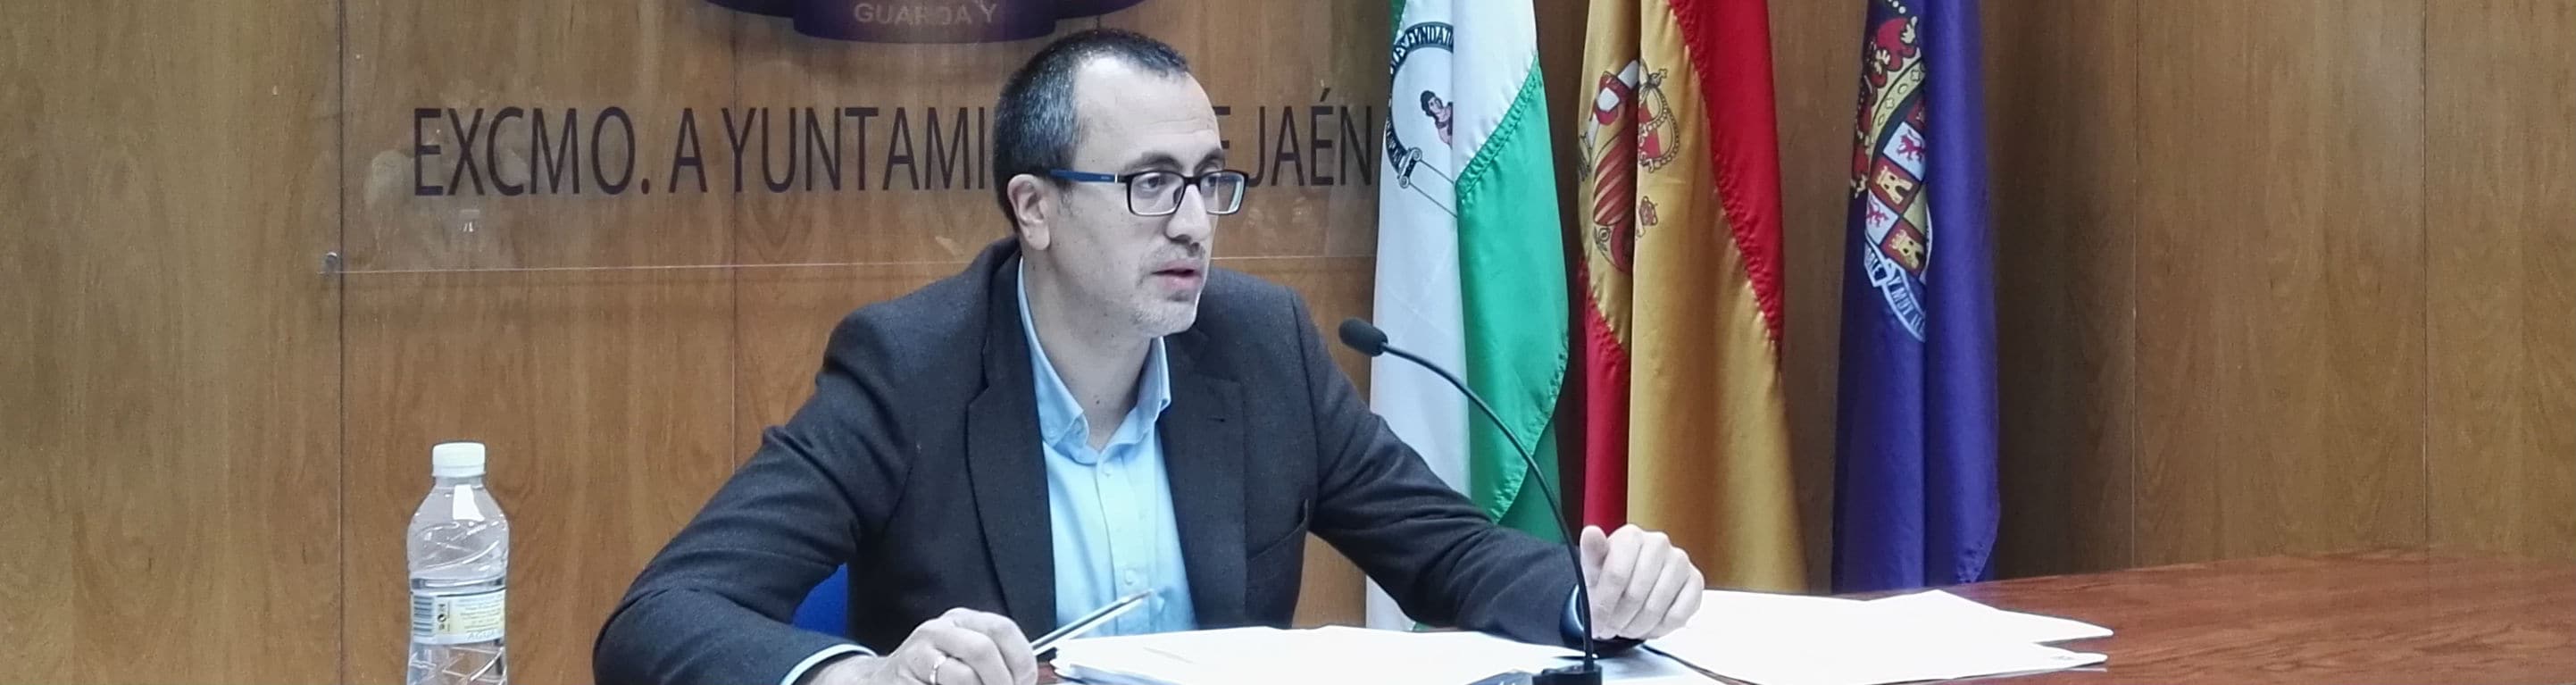 Manuel Bonilla, concejal de Hacienda del Ayuntamiento de Jaén